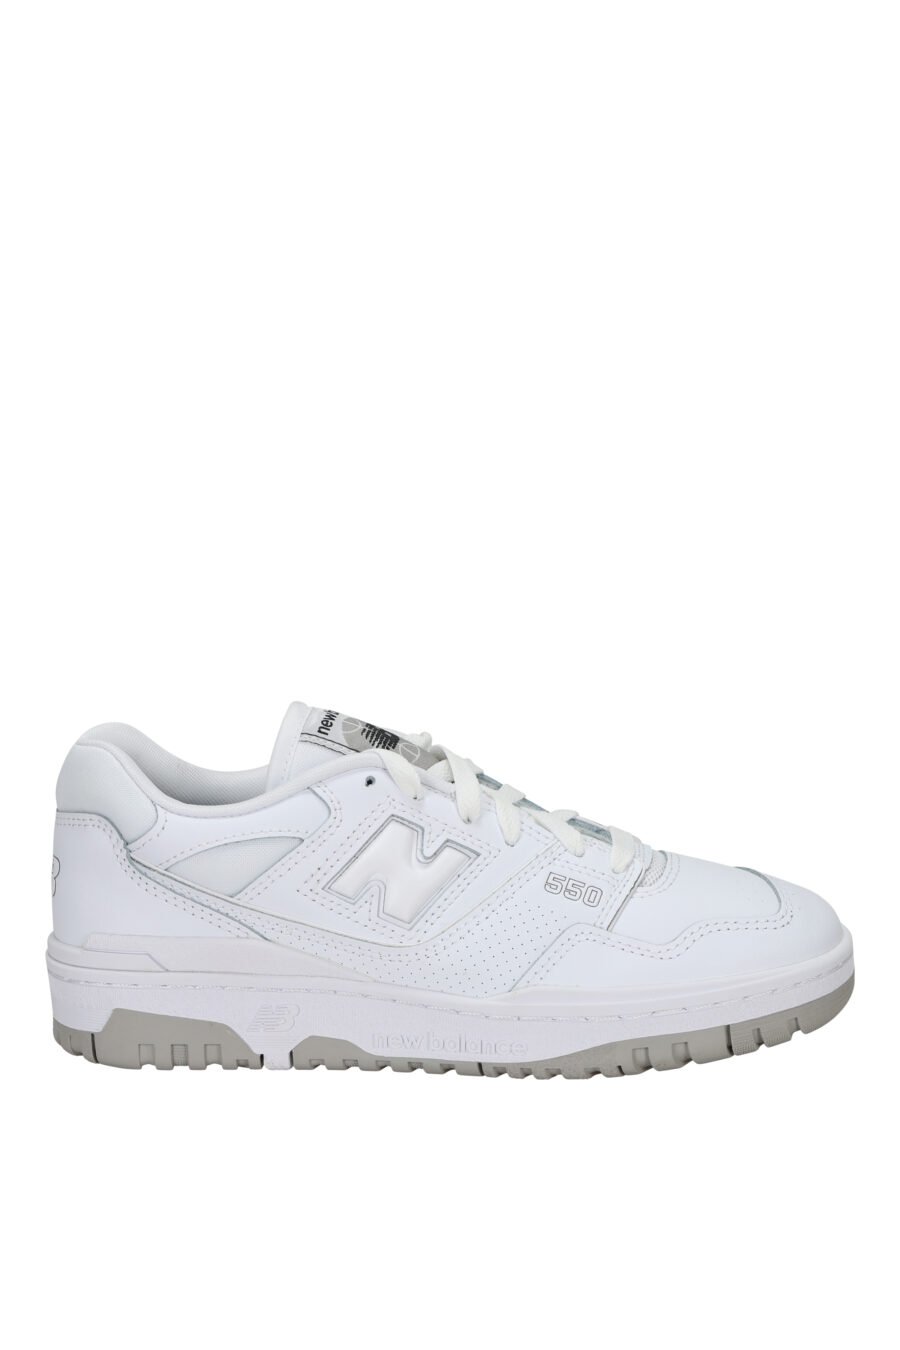 Zapatillas blancas mix con gris "550" y logo "N" blanco - 194768756931